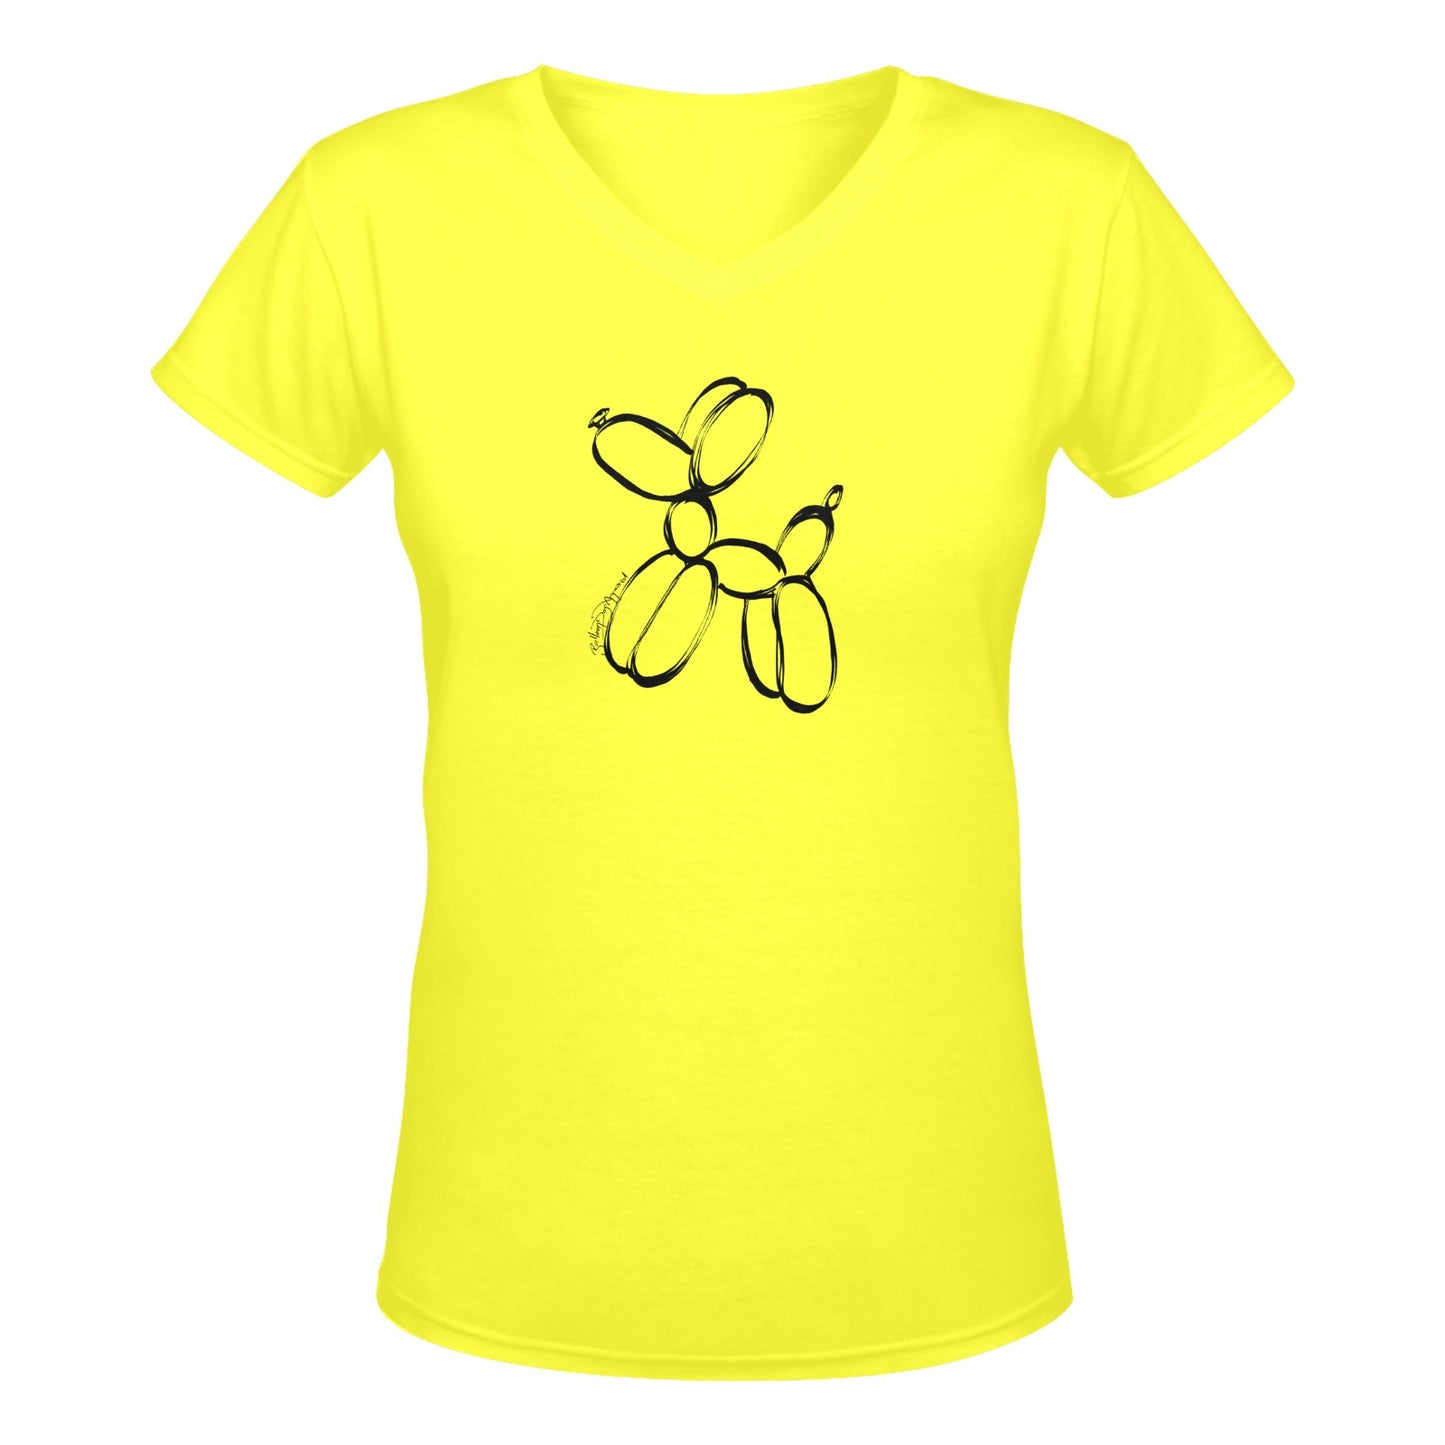 Yellow Balloon Dog T-Shirt